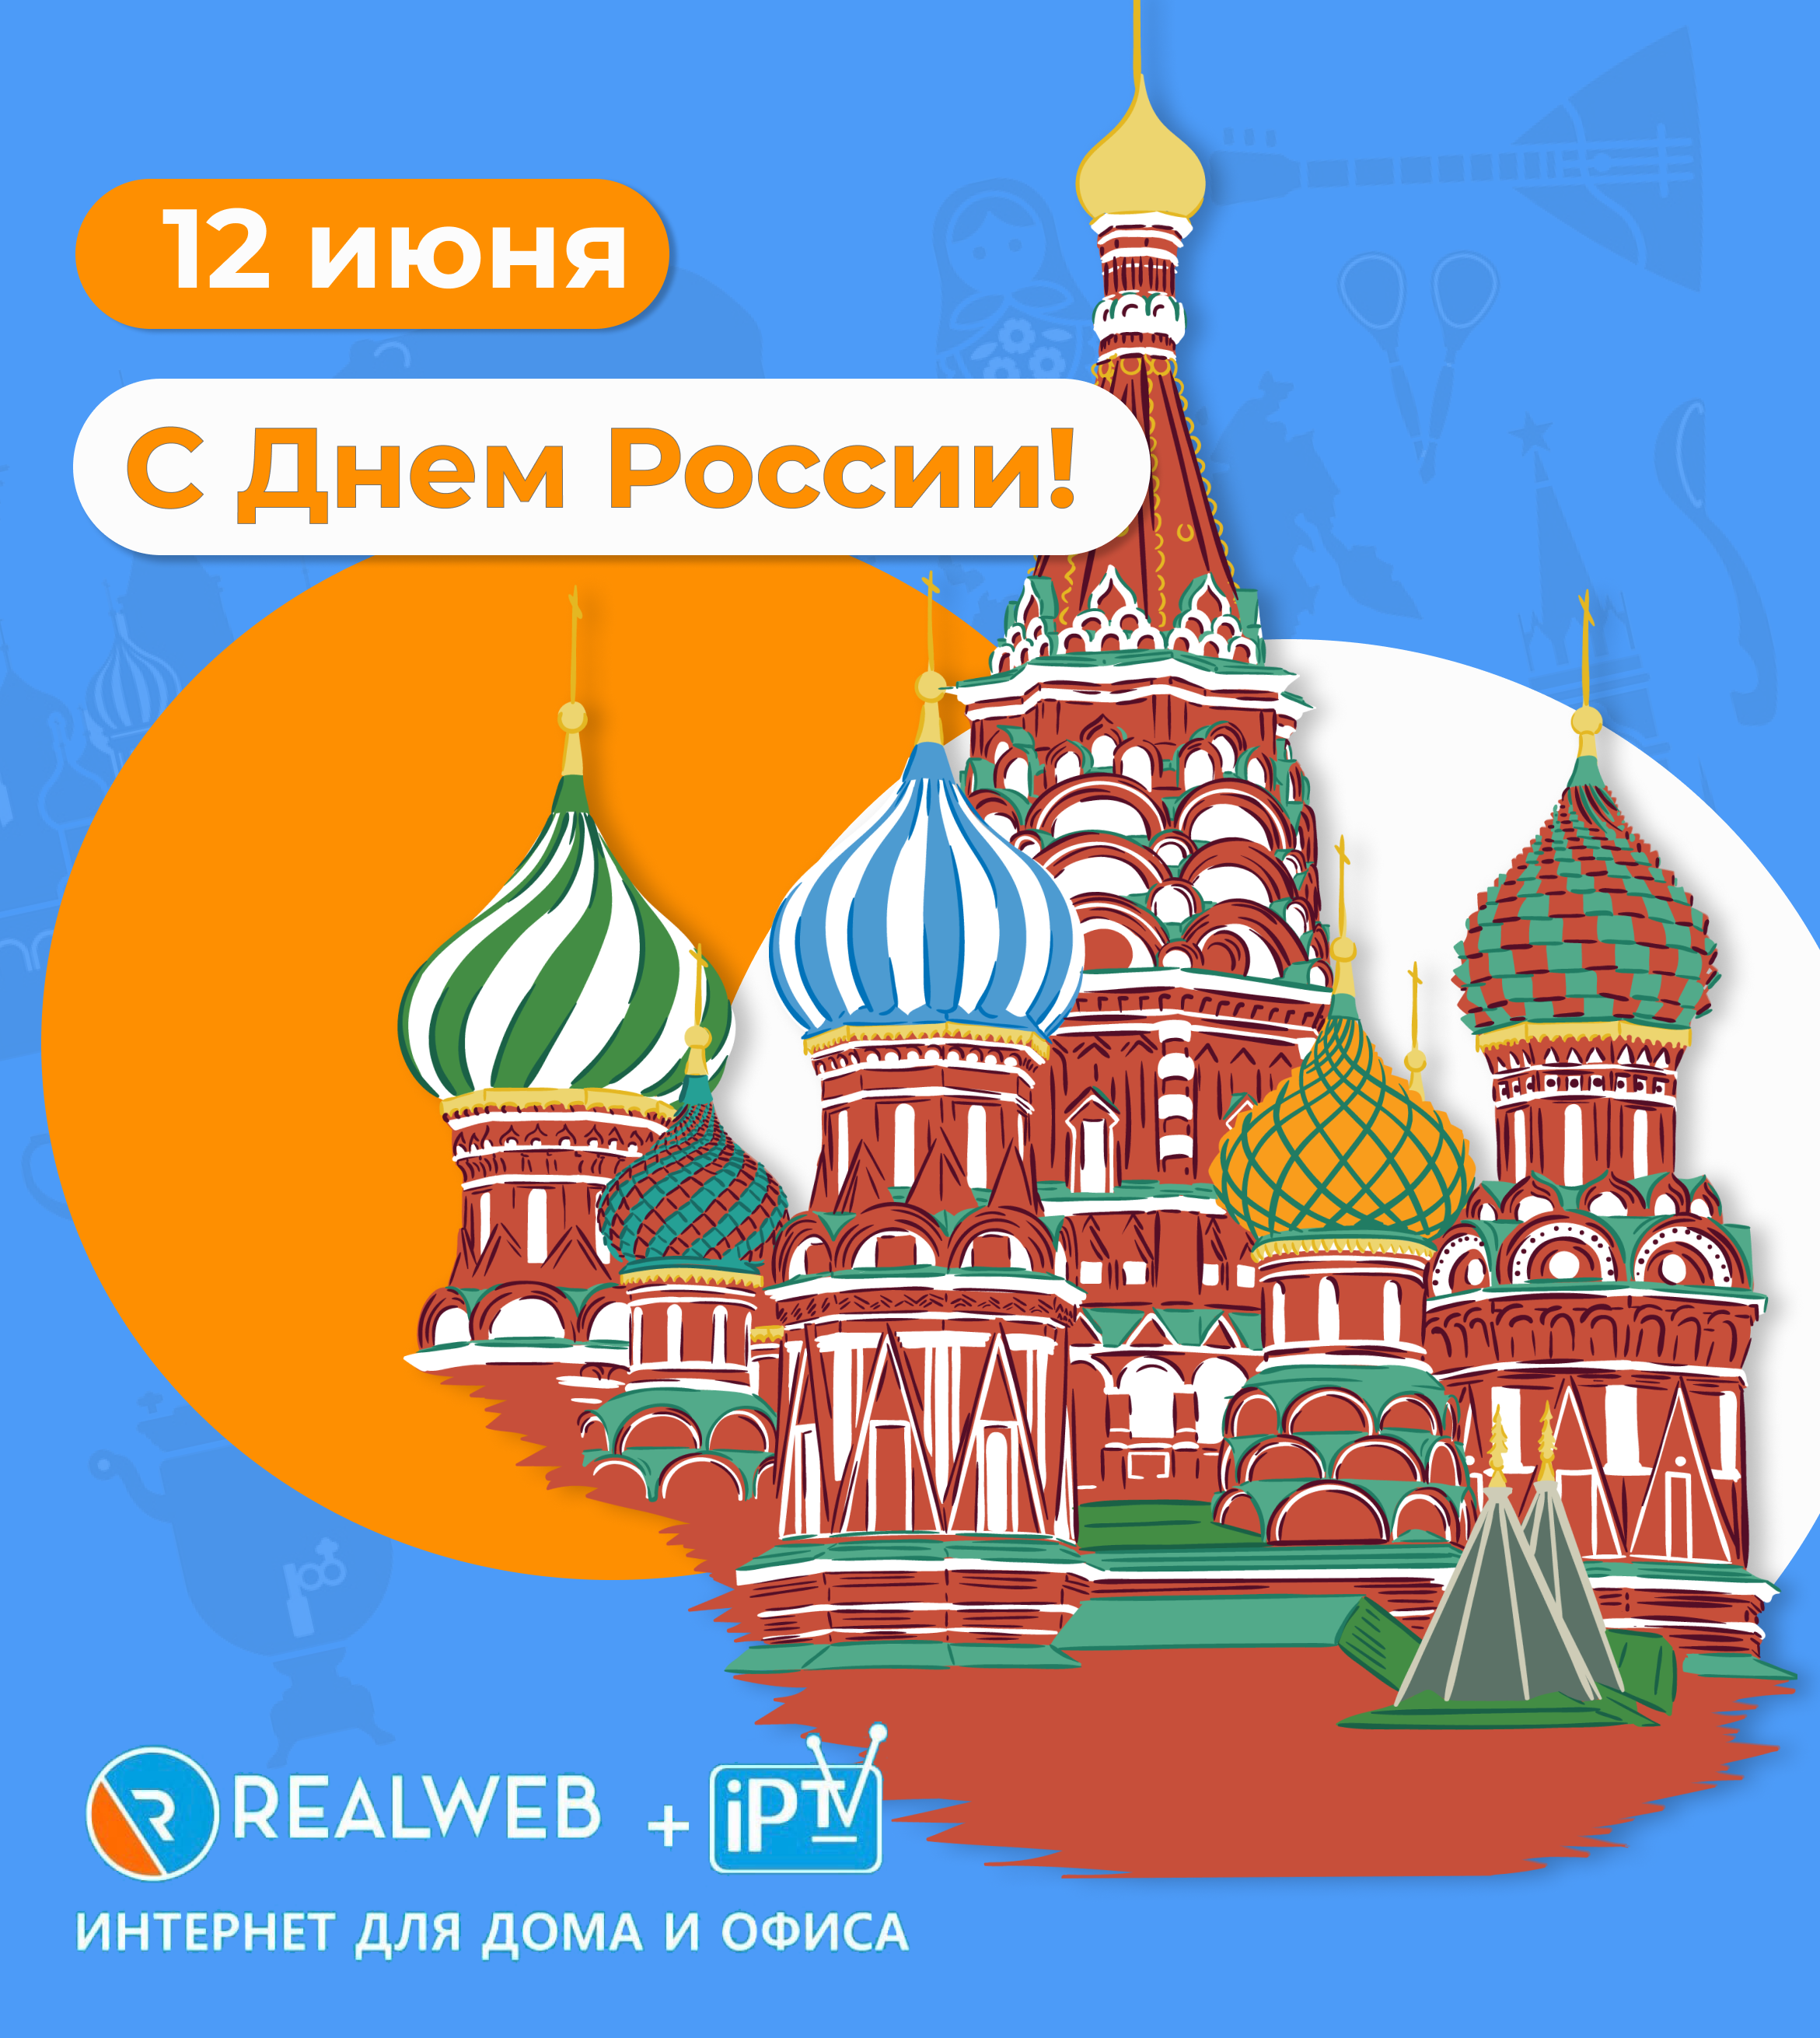 Компания RealWeb поздравляет всех С Днём России!